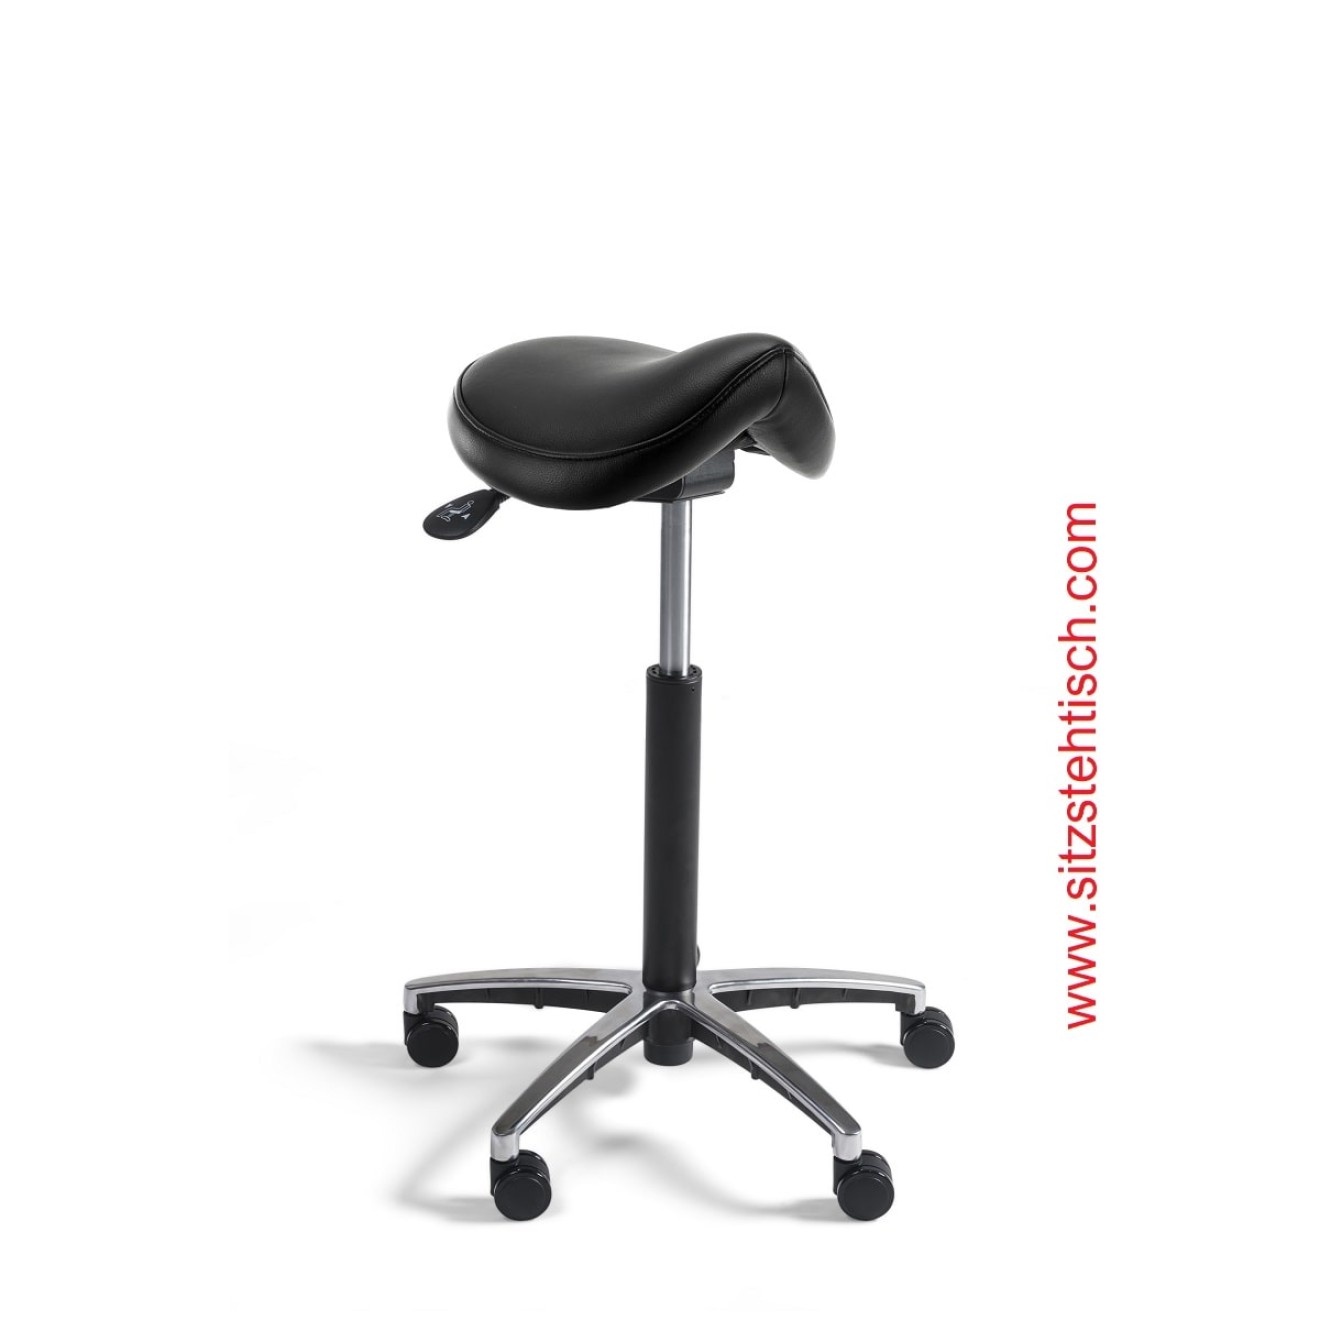 Sattelhocker Comfort mit normalen Sitz - Sitzhöhen- und Sitzwinkelverstellung - Bezug Kunstleder schwarz - Belastbarkeit bis 125 kg - 5 Jahre Garantie - 107233